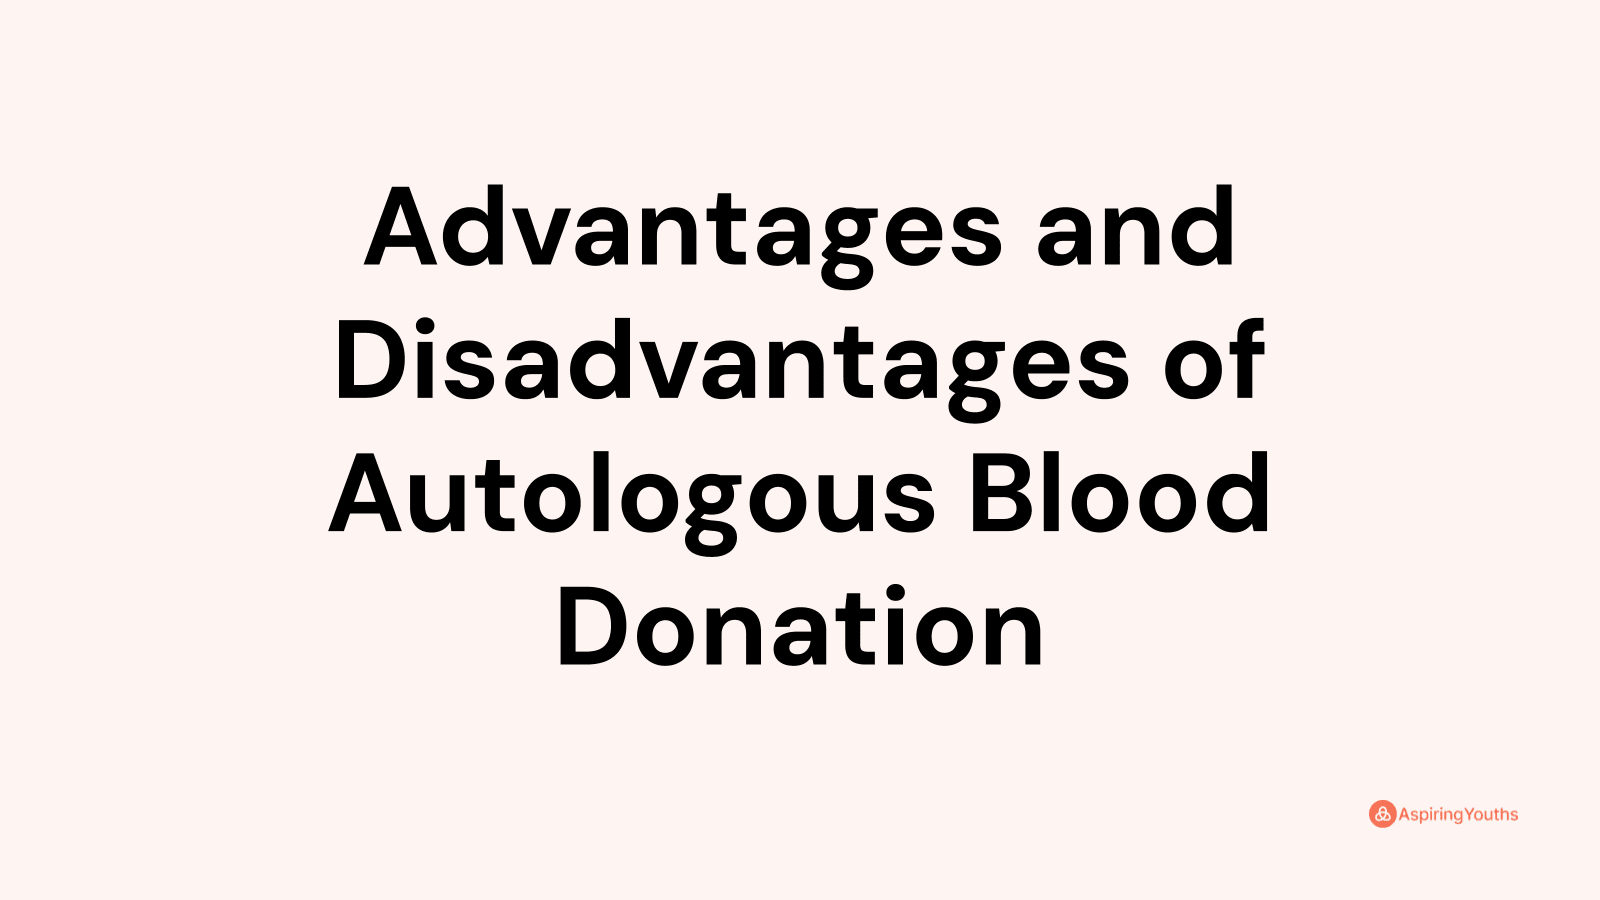 Advantages and disadvantages of Autologous Blood Donation